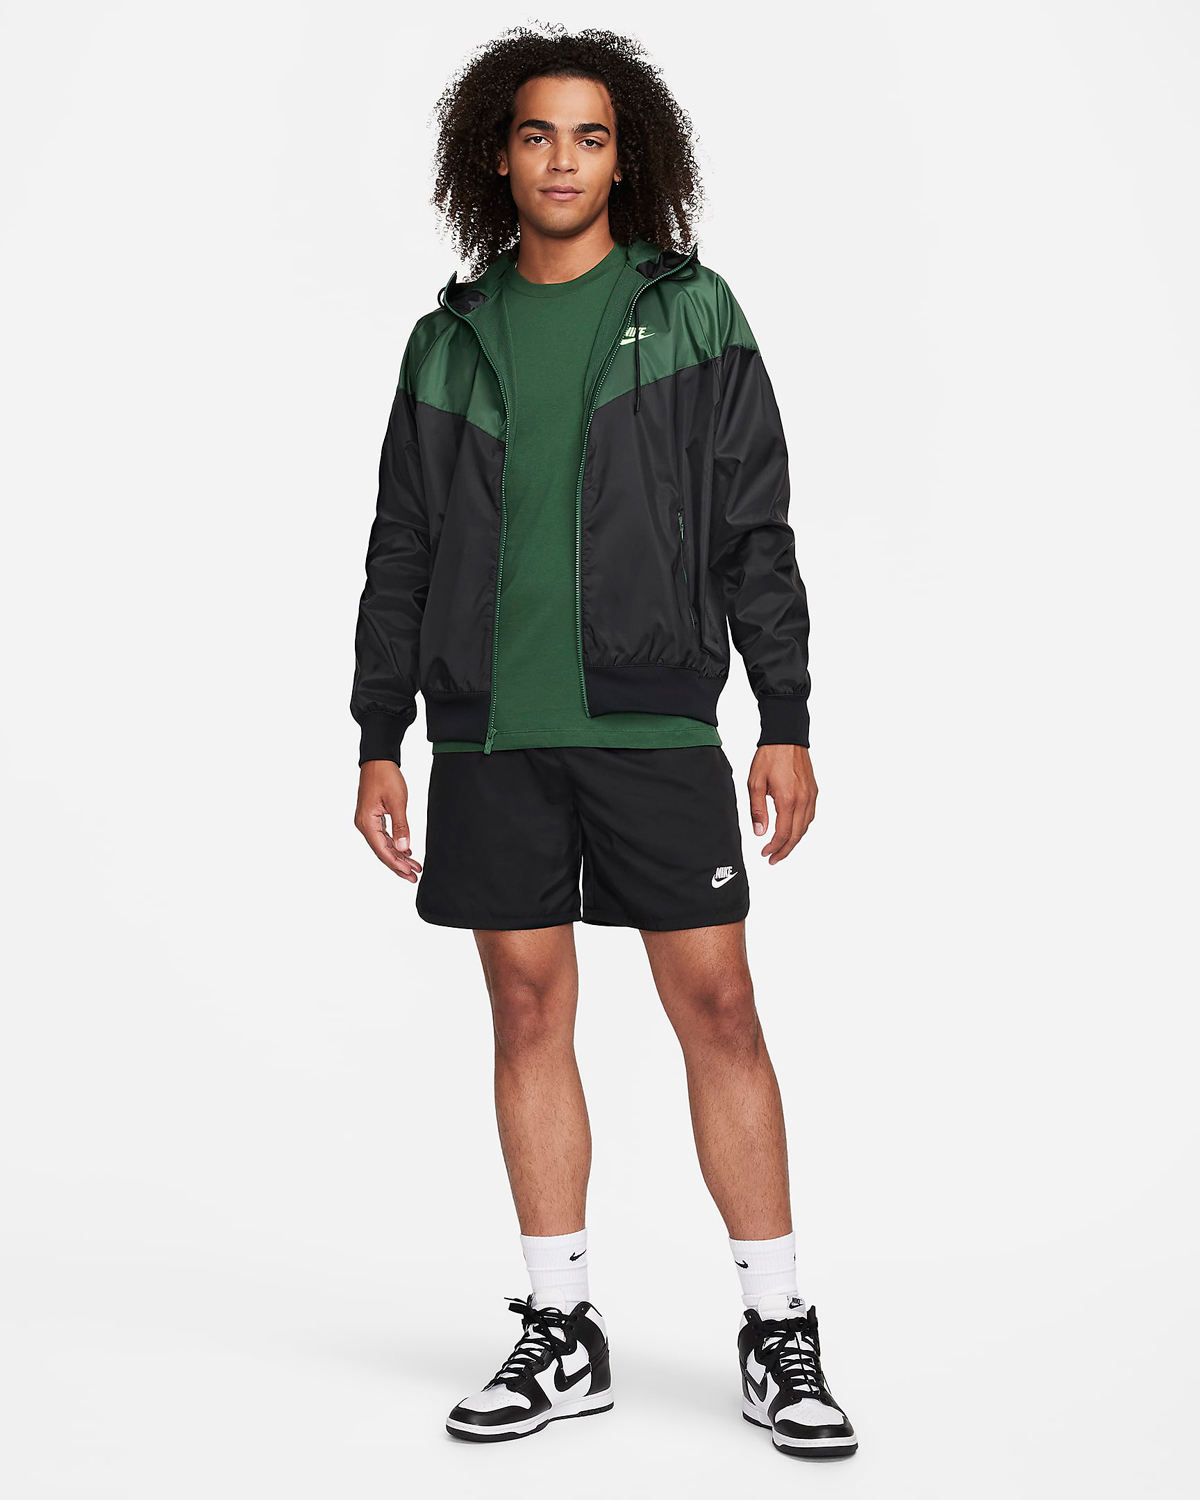 Nike-Sportswear-Windrunner-Jacket-Black-Fir-Green-Outfit